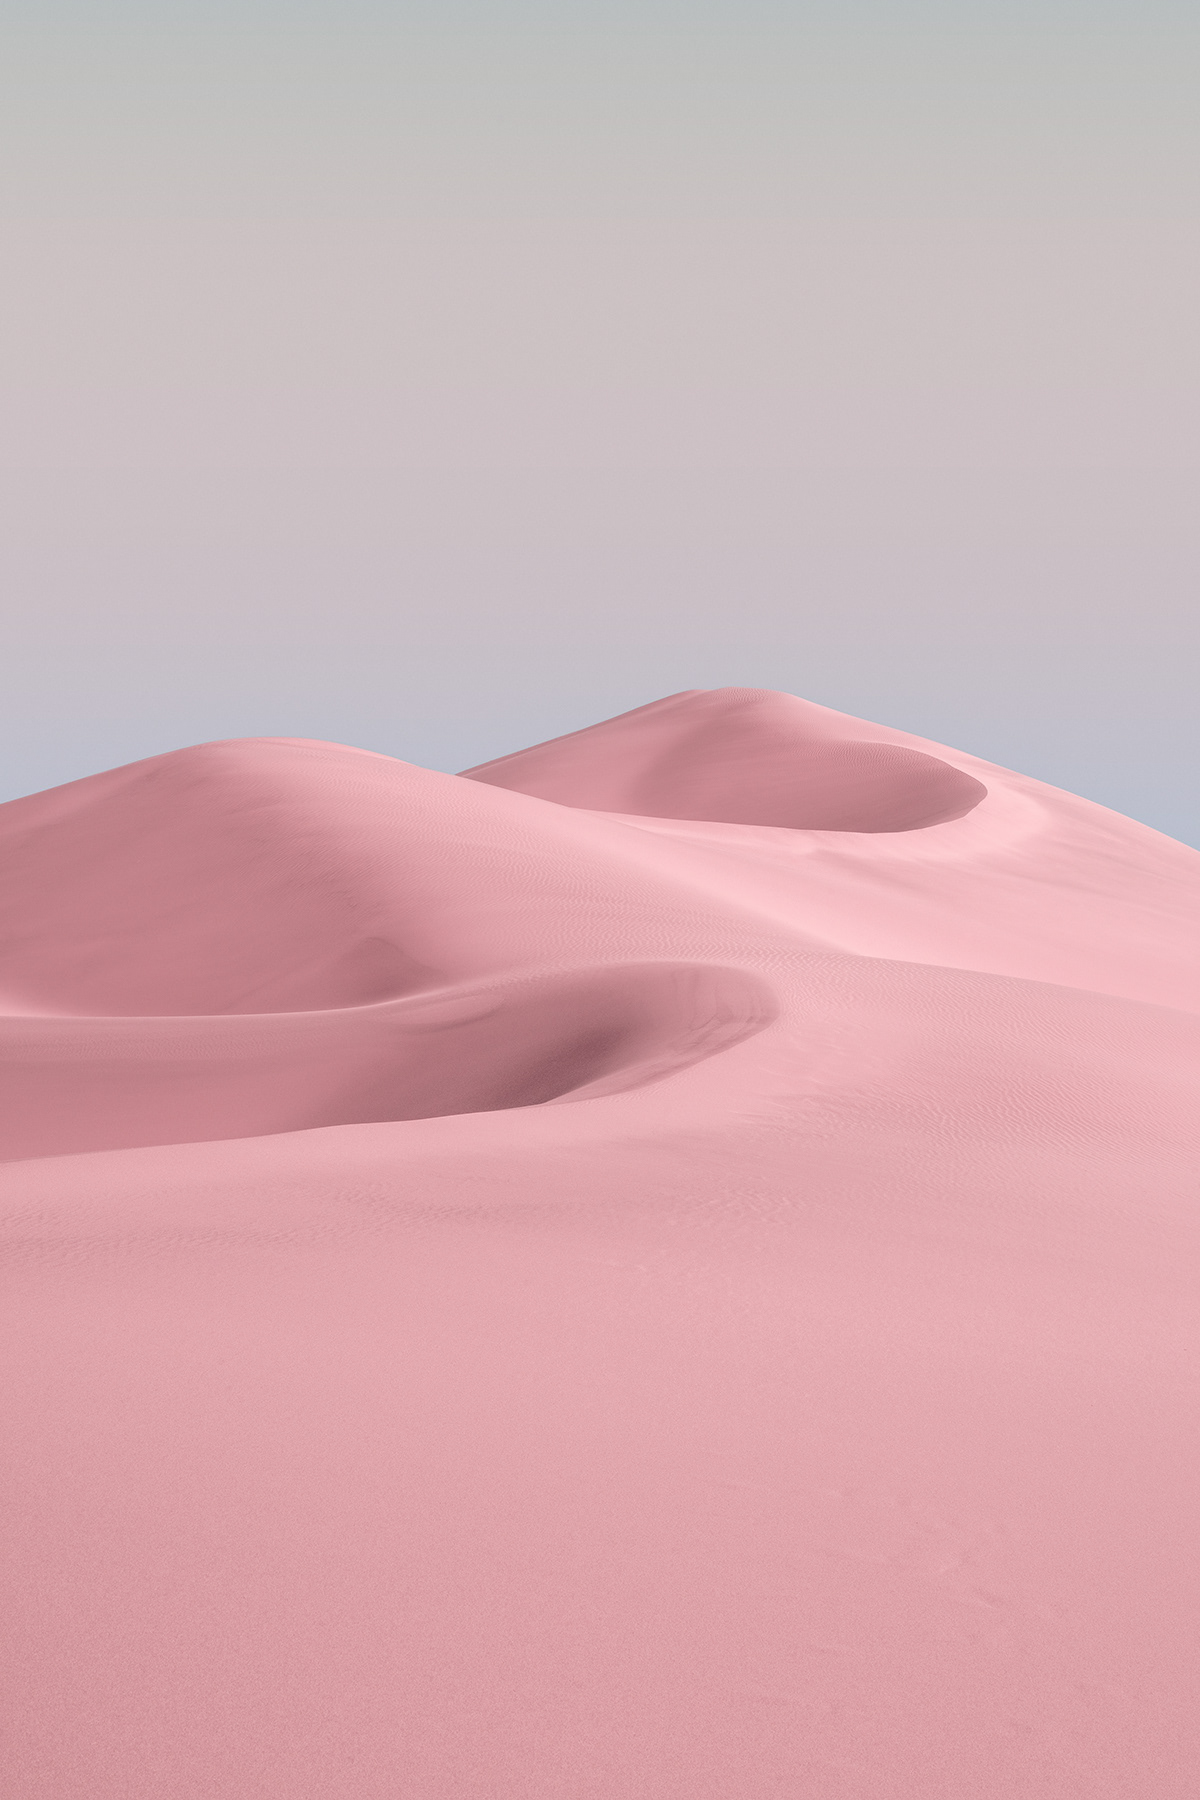 desert Magic Reality pink desert sand hill wallpaper 壁纸  粉色沙漠 魔幻现实 鸣沙山 Jonas daley